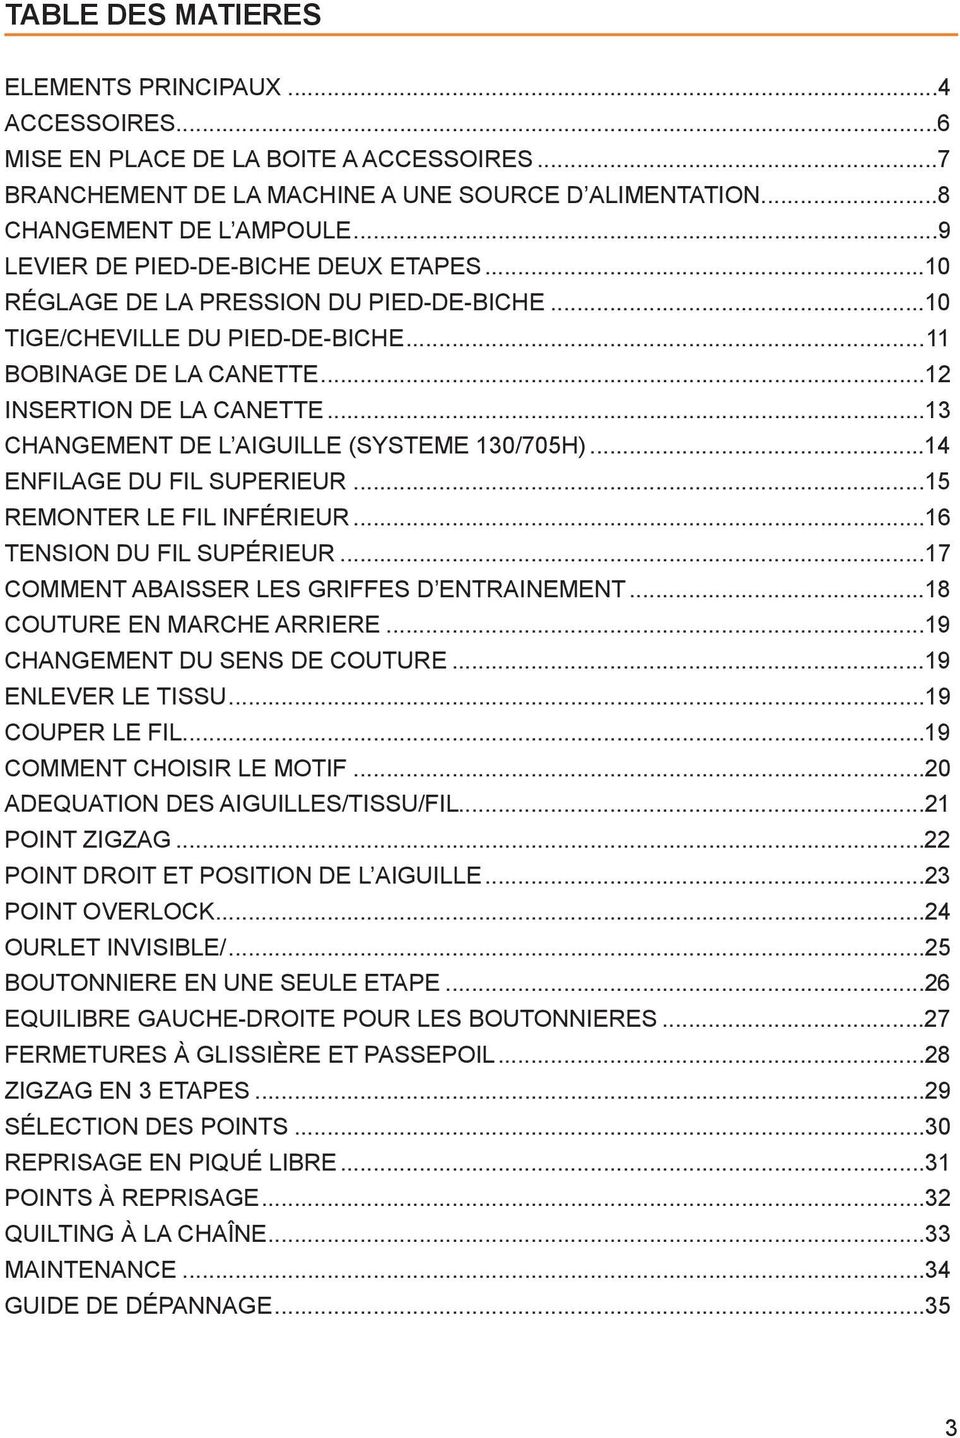 ..13 CHANGEMENT DE L AIGUILLE (SYSTEME 130/705H)...14 ENFILAGE DU FIL SUPERIEUR...15 REMONTER LE FIL INFÉRIEUR...16 TENSION DU FIL SUPÉRIEUR...17 COMMENT ABAISSER LES GRIFFES D ENTRAINEMENT.